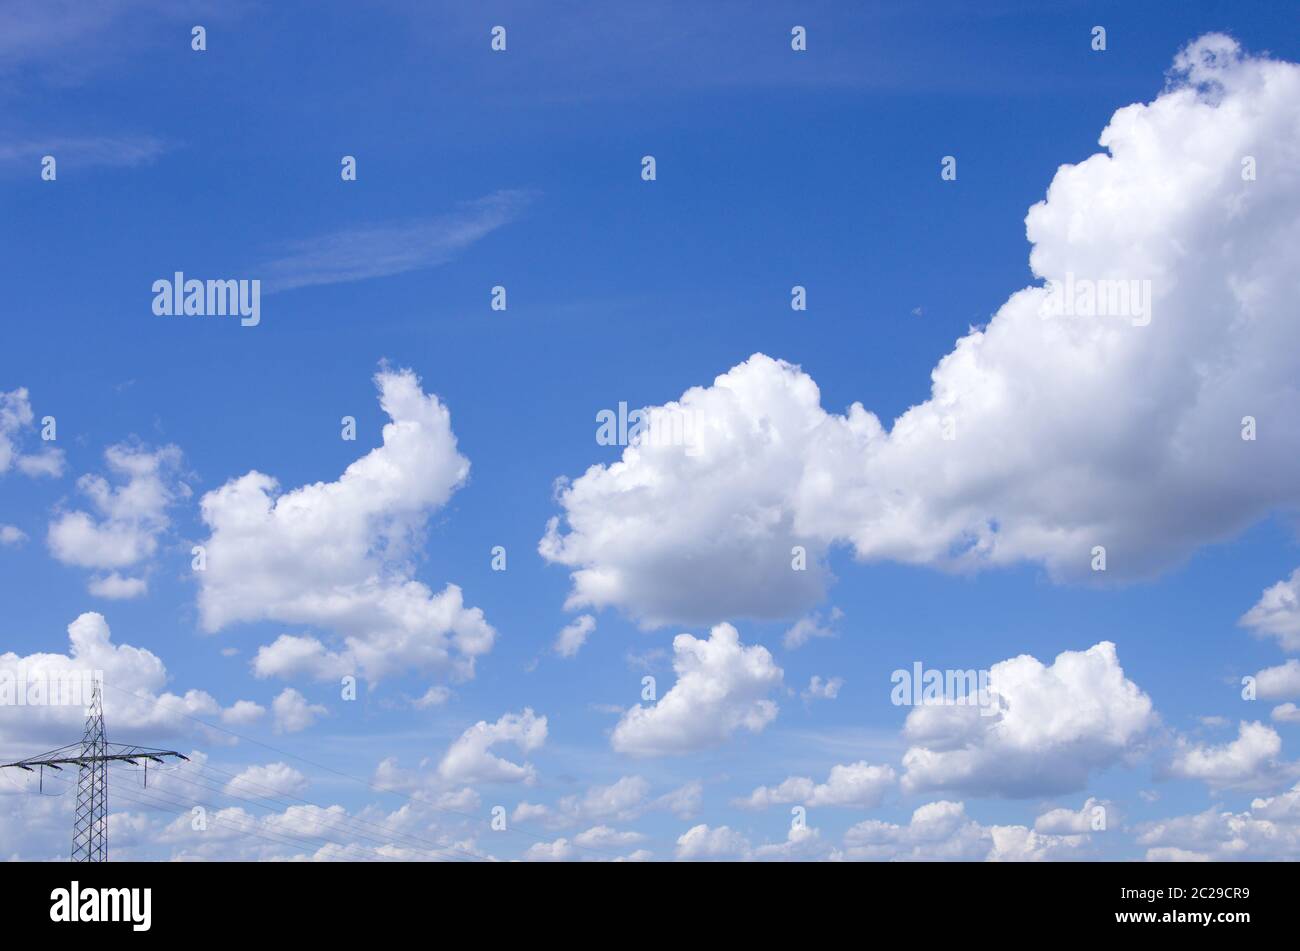 Panorama von flauschigen Schäfchenwolken vor blauem Himmel mit Stromleitung Stock Photo